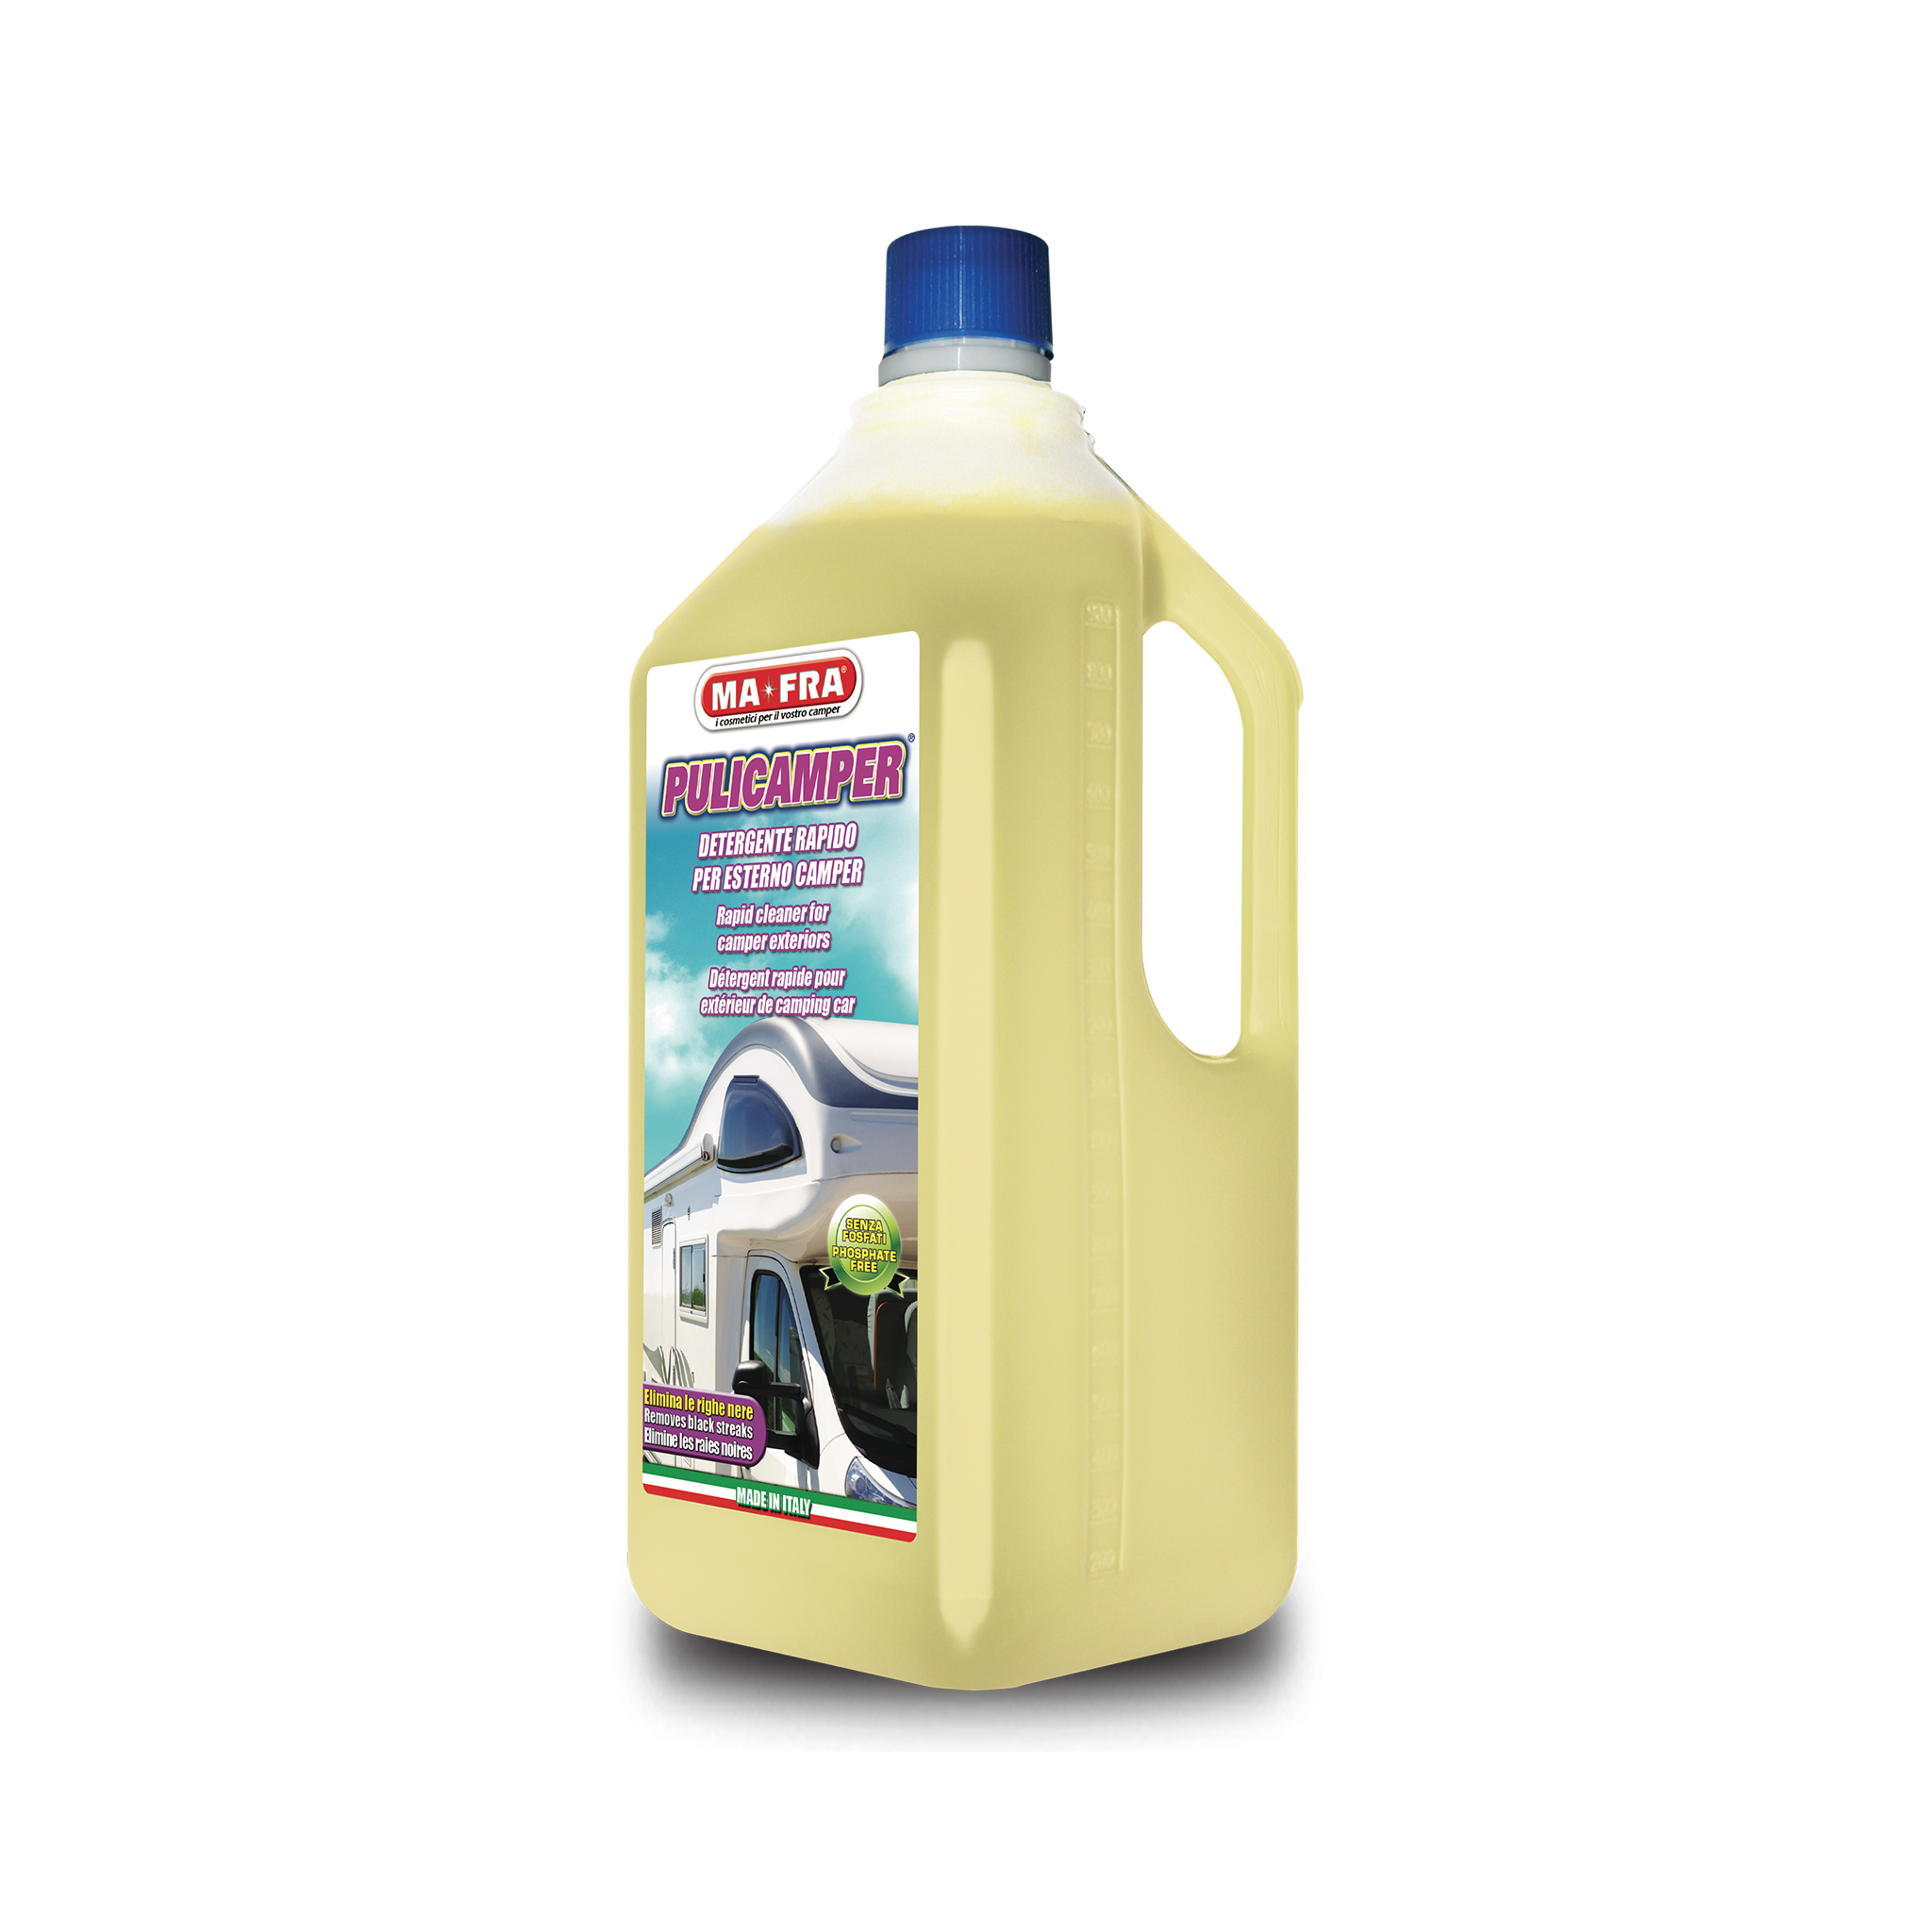 Förtvättsmedel Husvagn Mafra Pulicamper, 2000 ml